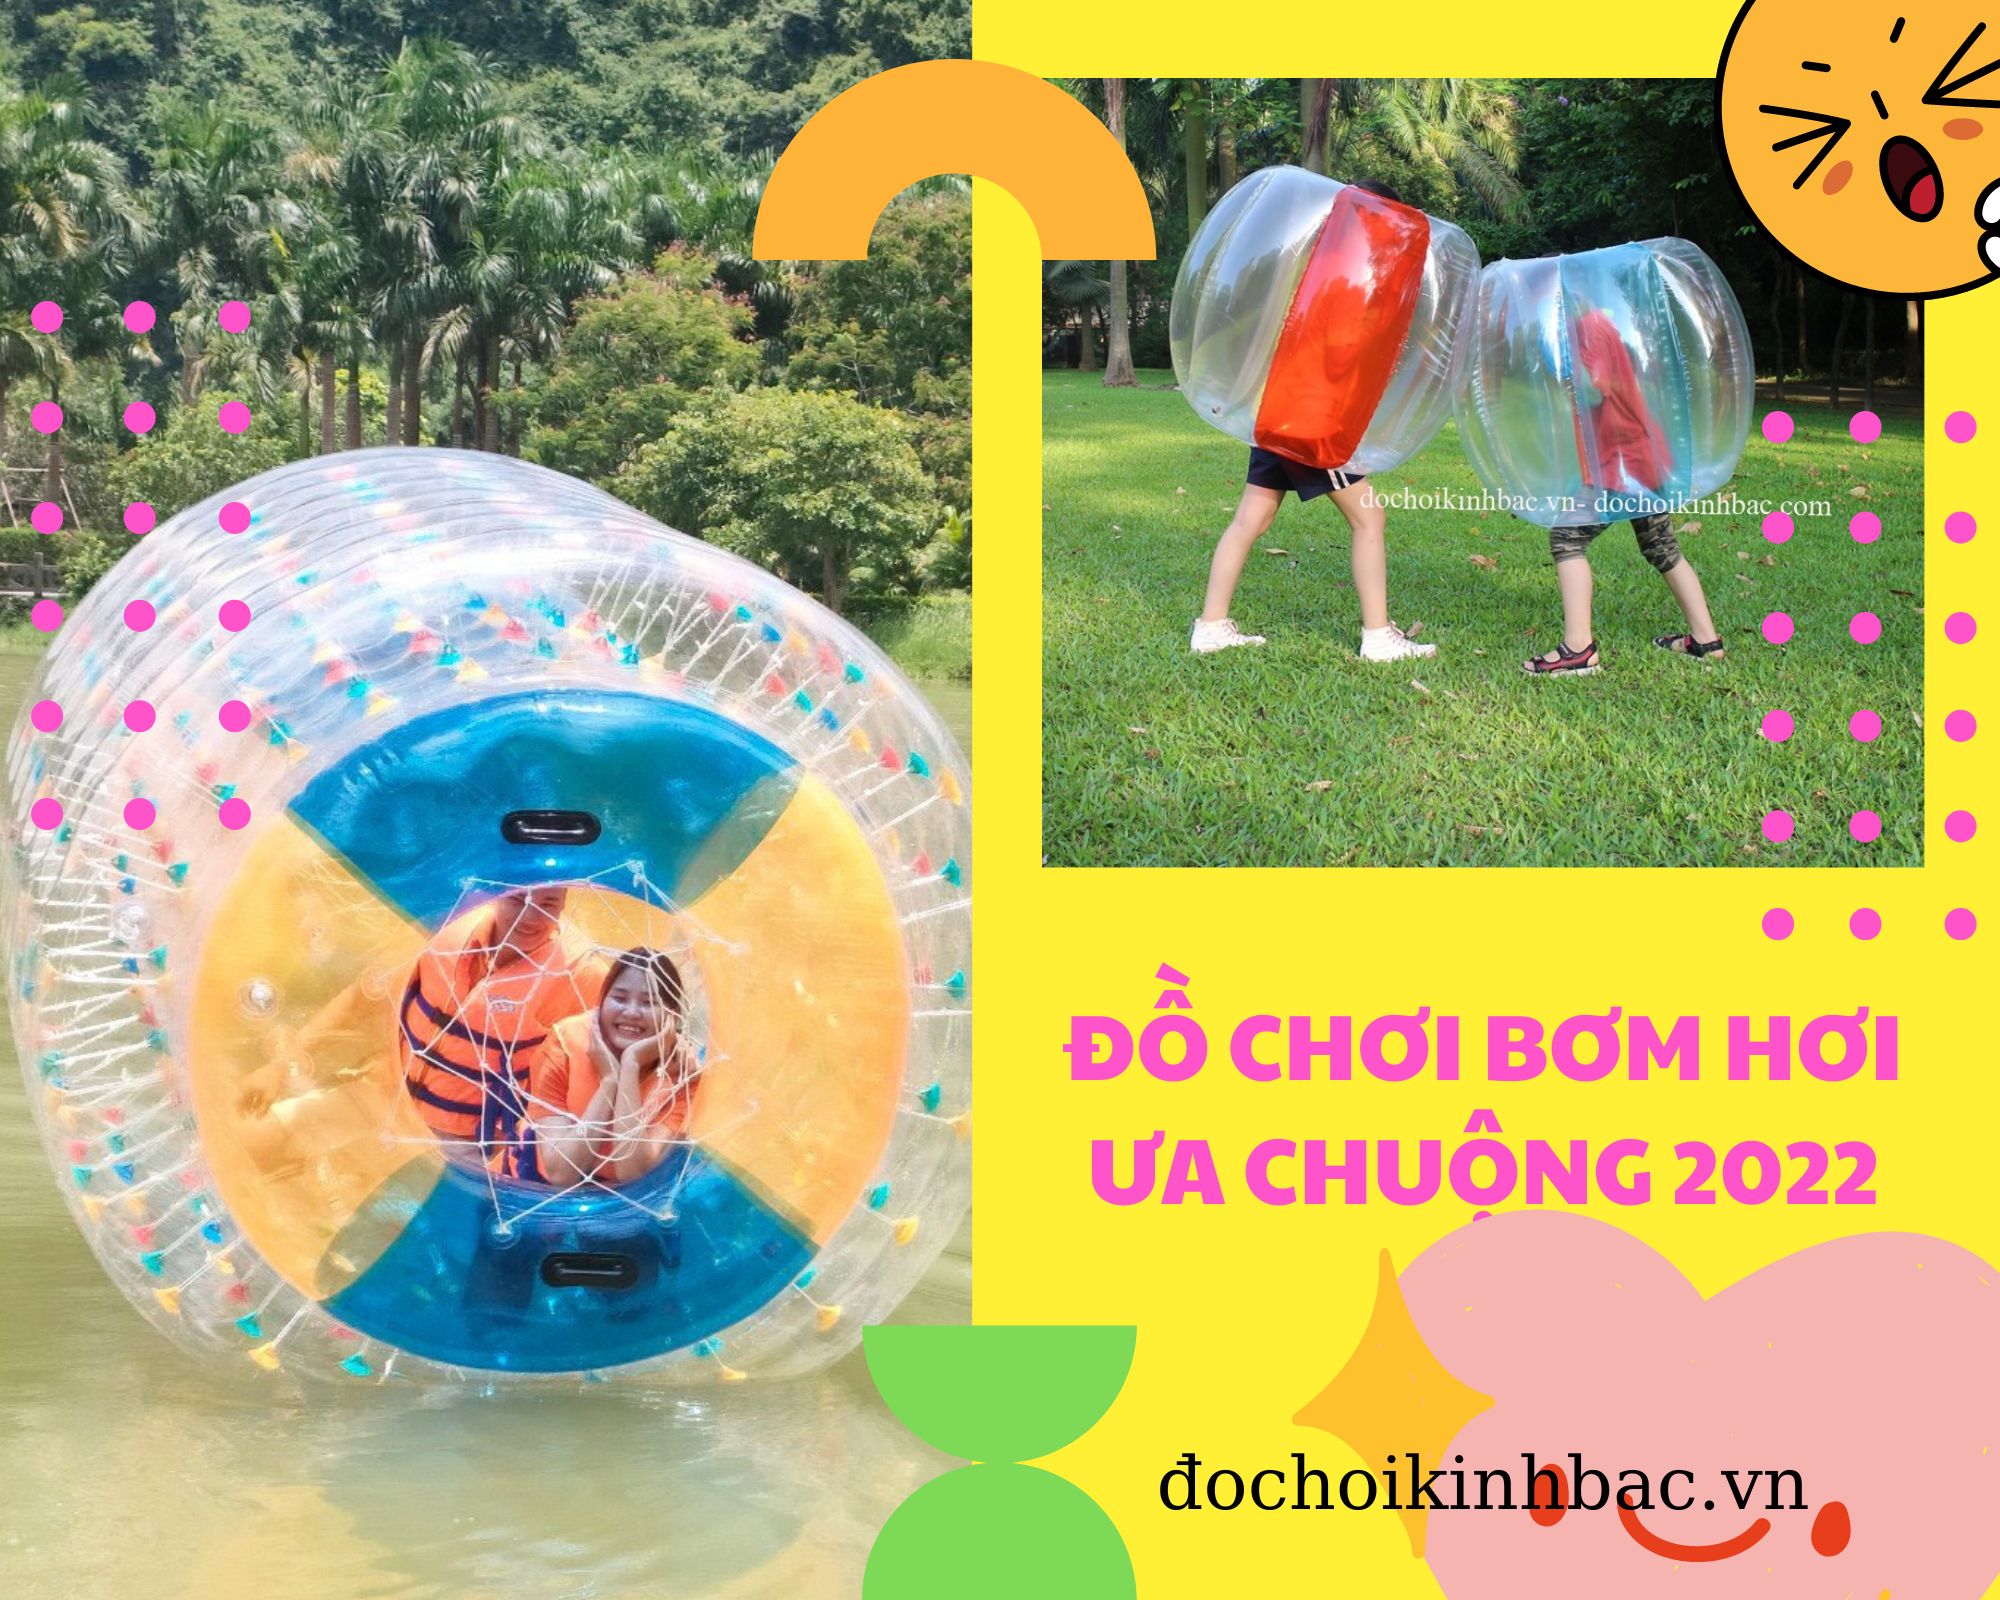 TOP 7 mẫu đồ chơi bơm hơi được yêu thích nhất năm 2022 tại Hưng Đạo, Dương Kinh, Hải Phòng